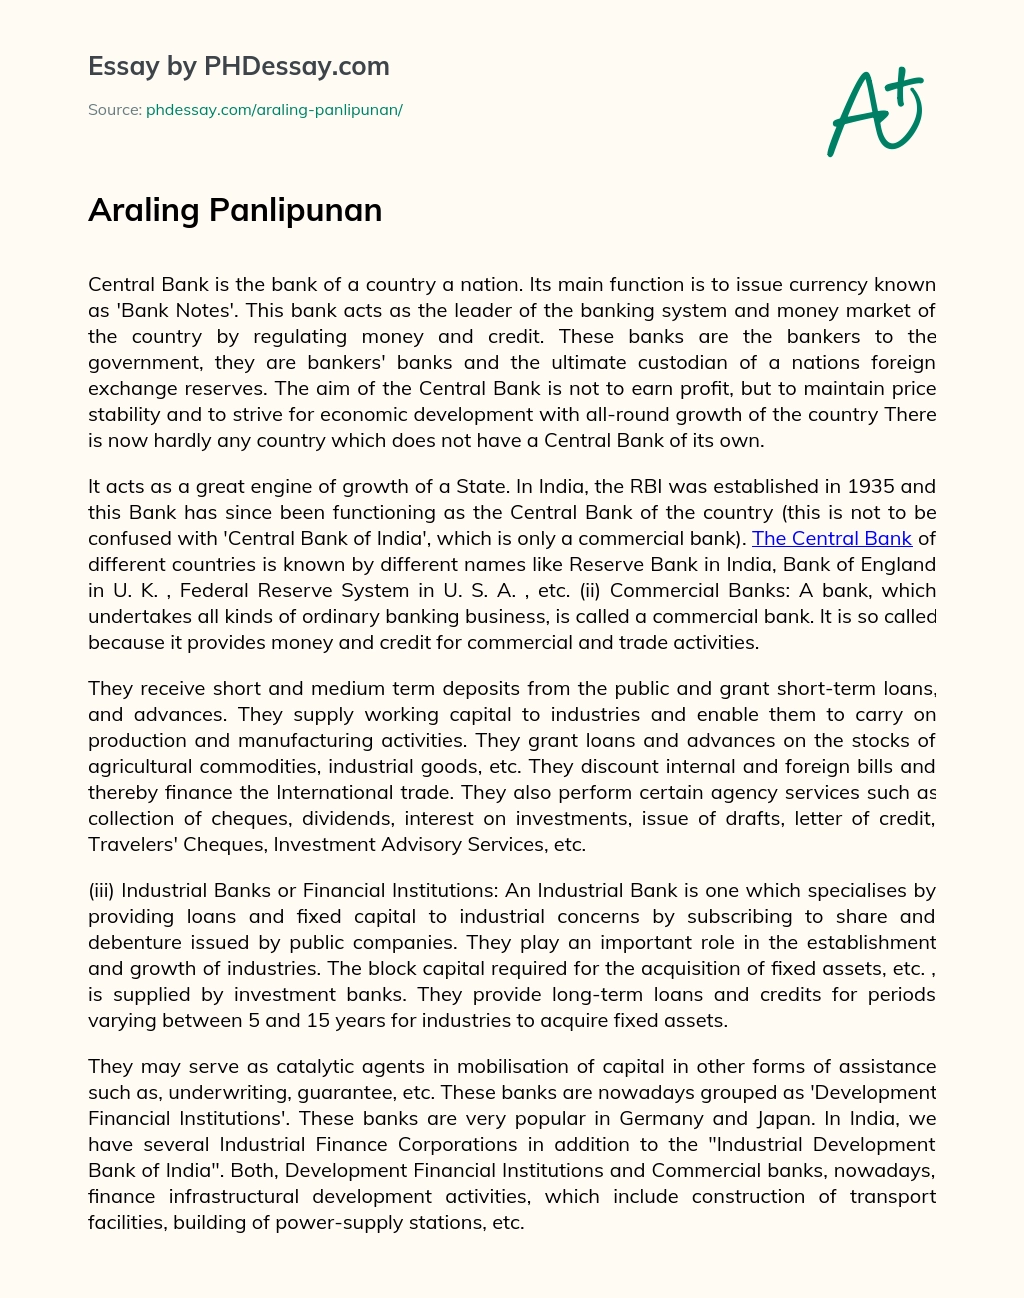 Araling Panlipunan essay